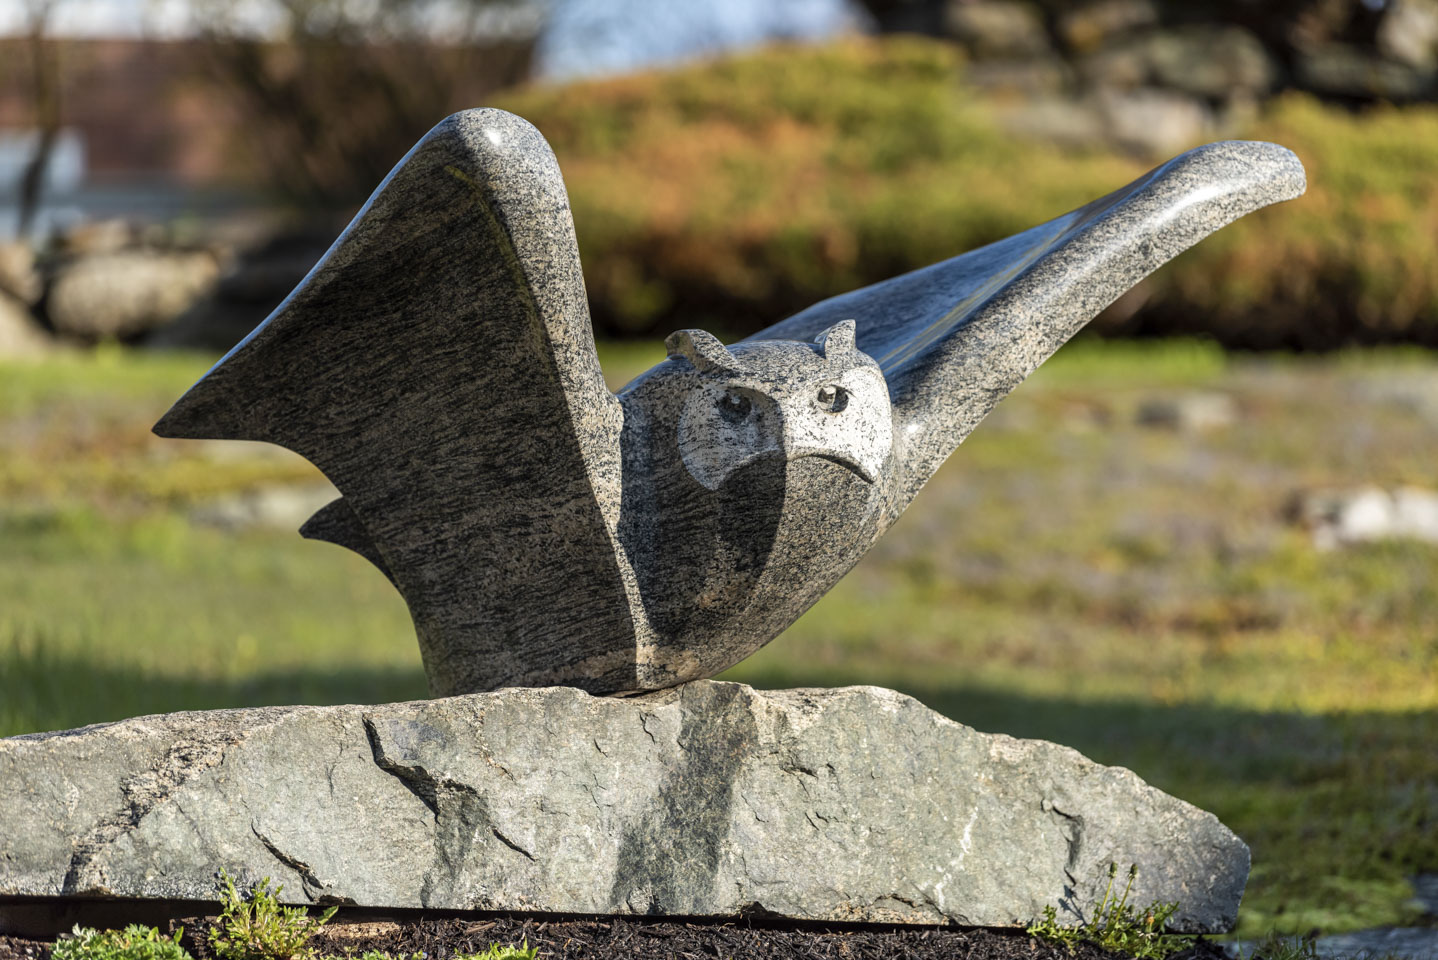 sculpture called Headwind by Andreas von Huene